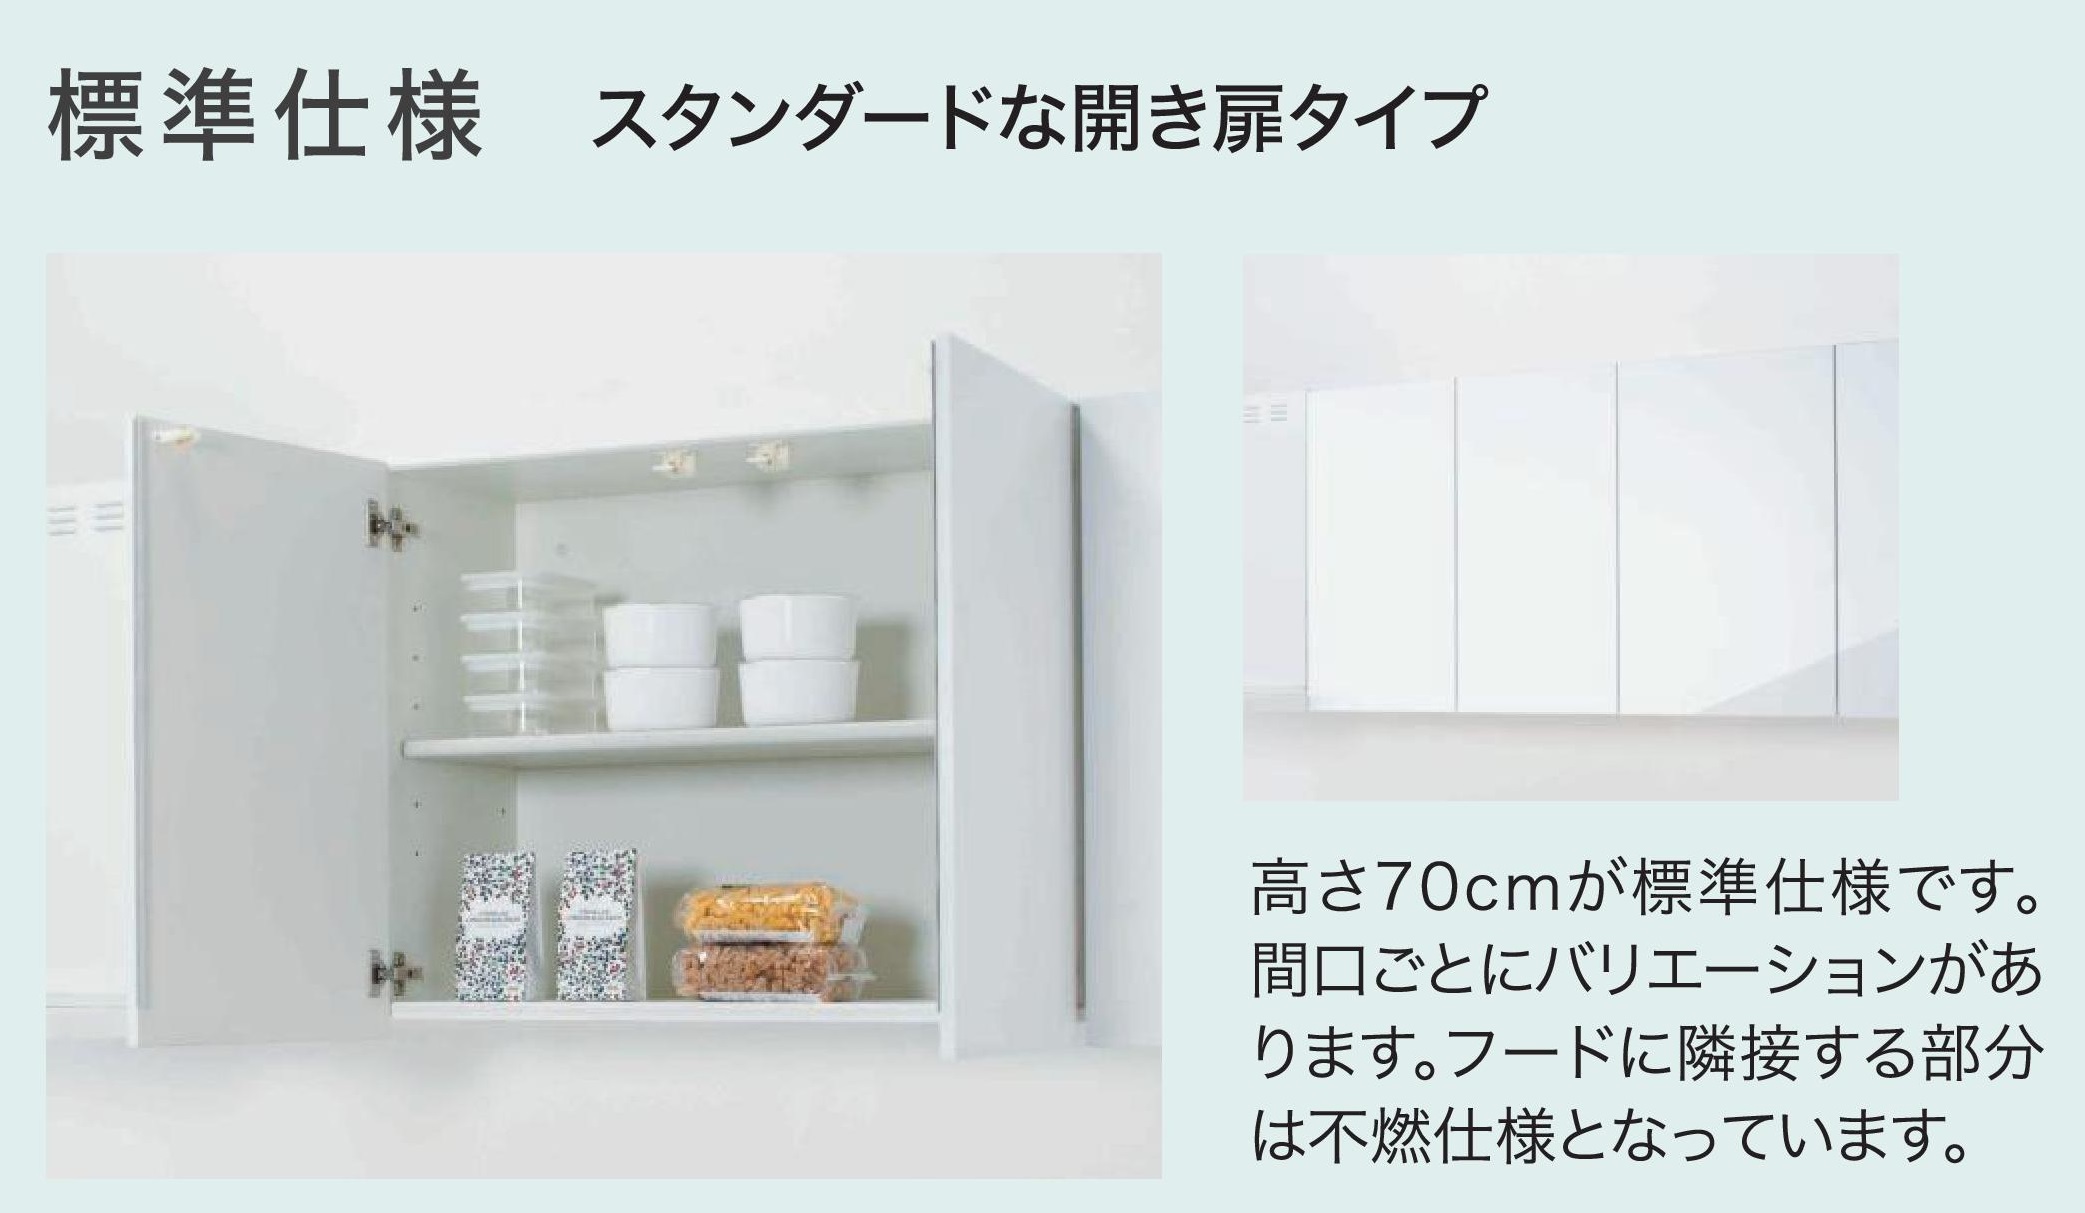 キッチン 吊戸棚 ミドル(高さ70cm) 間口90cm GXシリーズ GX-AM-90ZN